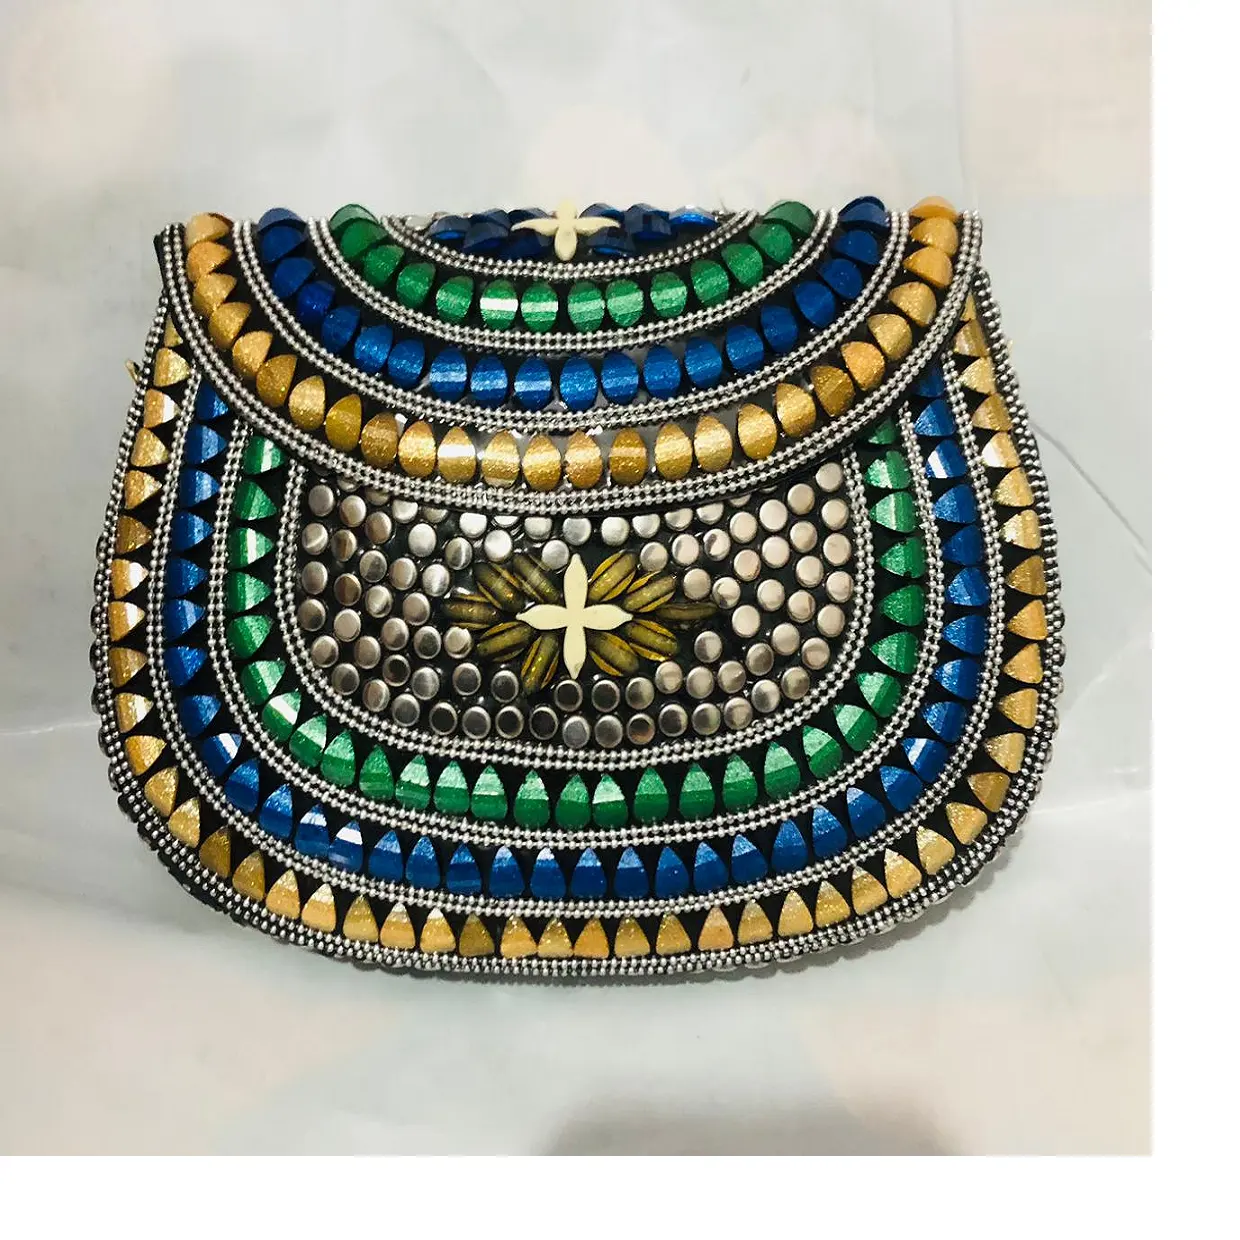 kundenspezifisch in 3 farben perlenarbeit traditionell mosaik metallbeutel mit mop, glasperle und anderen verzierungen ideal für wiederverkauf